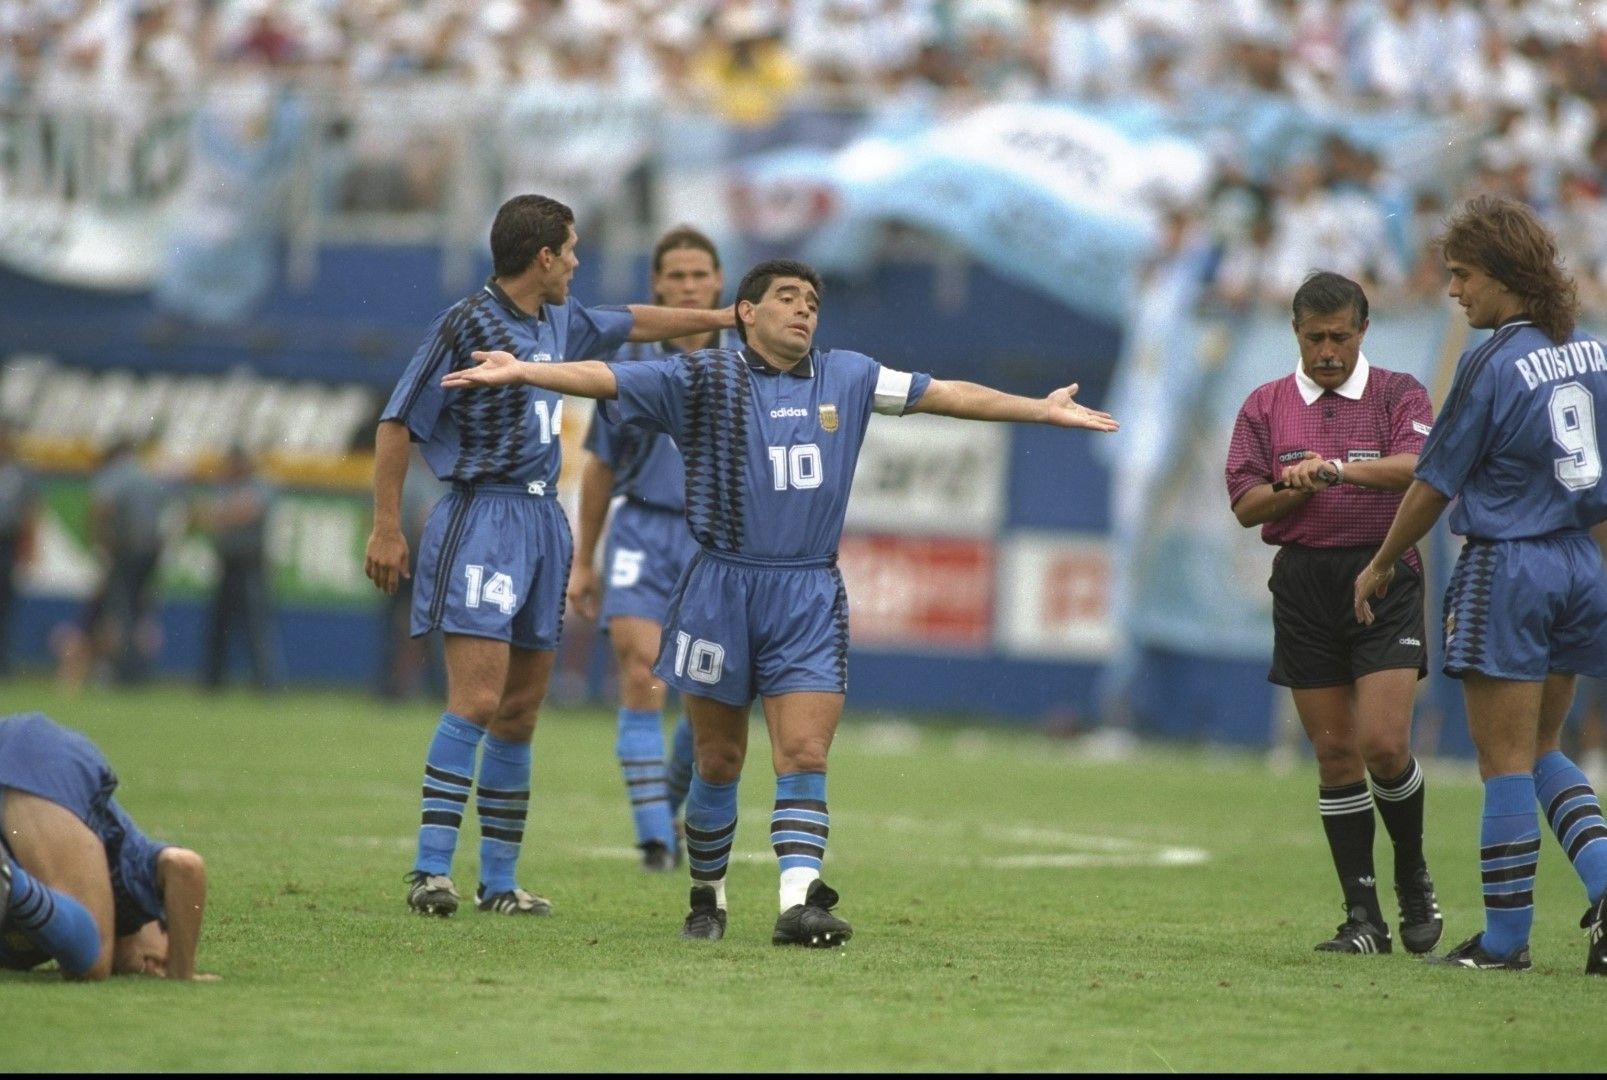 Пращящ от здраве и неуморим на терена, 33-годишният Марадона поведе Аржентина на Световното в САЩ през 1994-а. И след две убедителни победи на старта изглеждаше, че тимът върви към трети пореден финал след 1986 и 1990 г. Преди мача с България в групата обаче, светът отново бе в шок - Марадона отново бе дал положителна допинг проба. Успя да изиграе още 20-ина мача за Бока Хуниорс, преди да се откаже от футбола на 37 г. през 1997-ма.